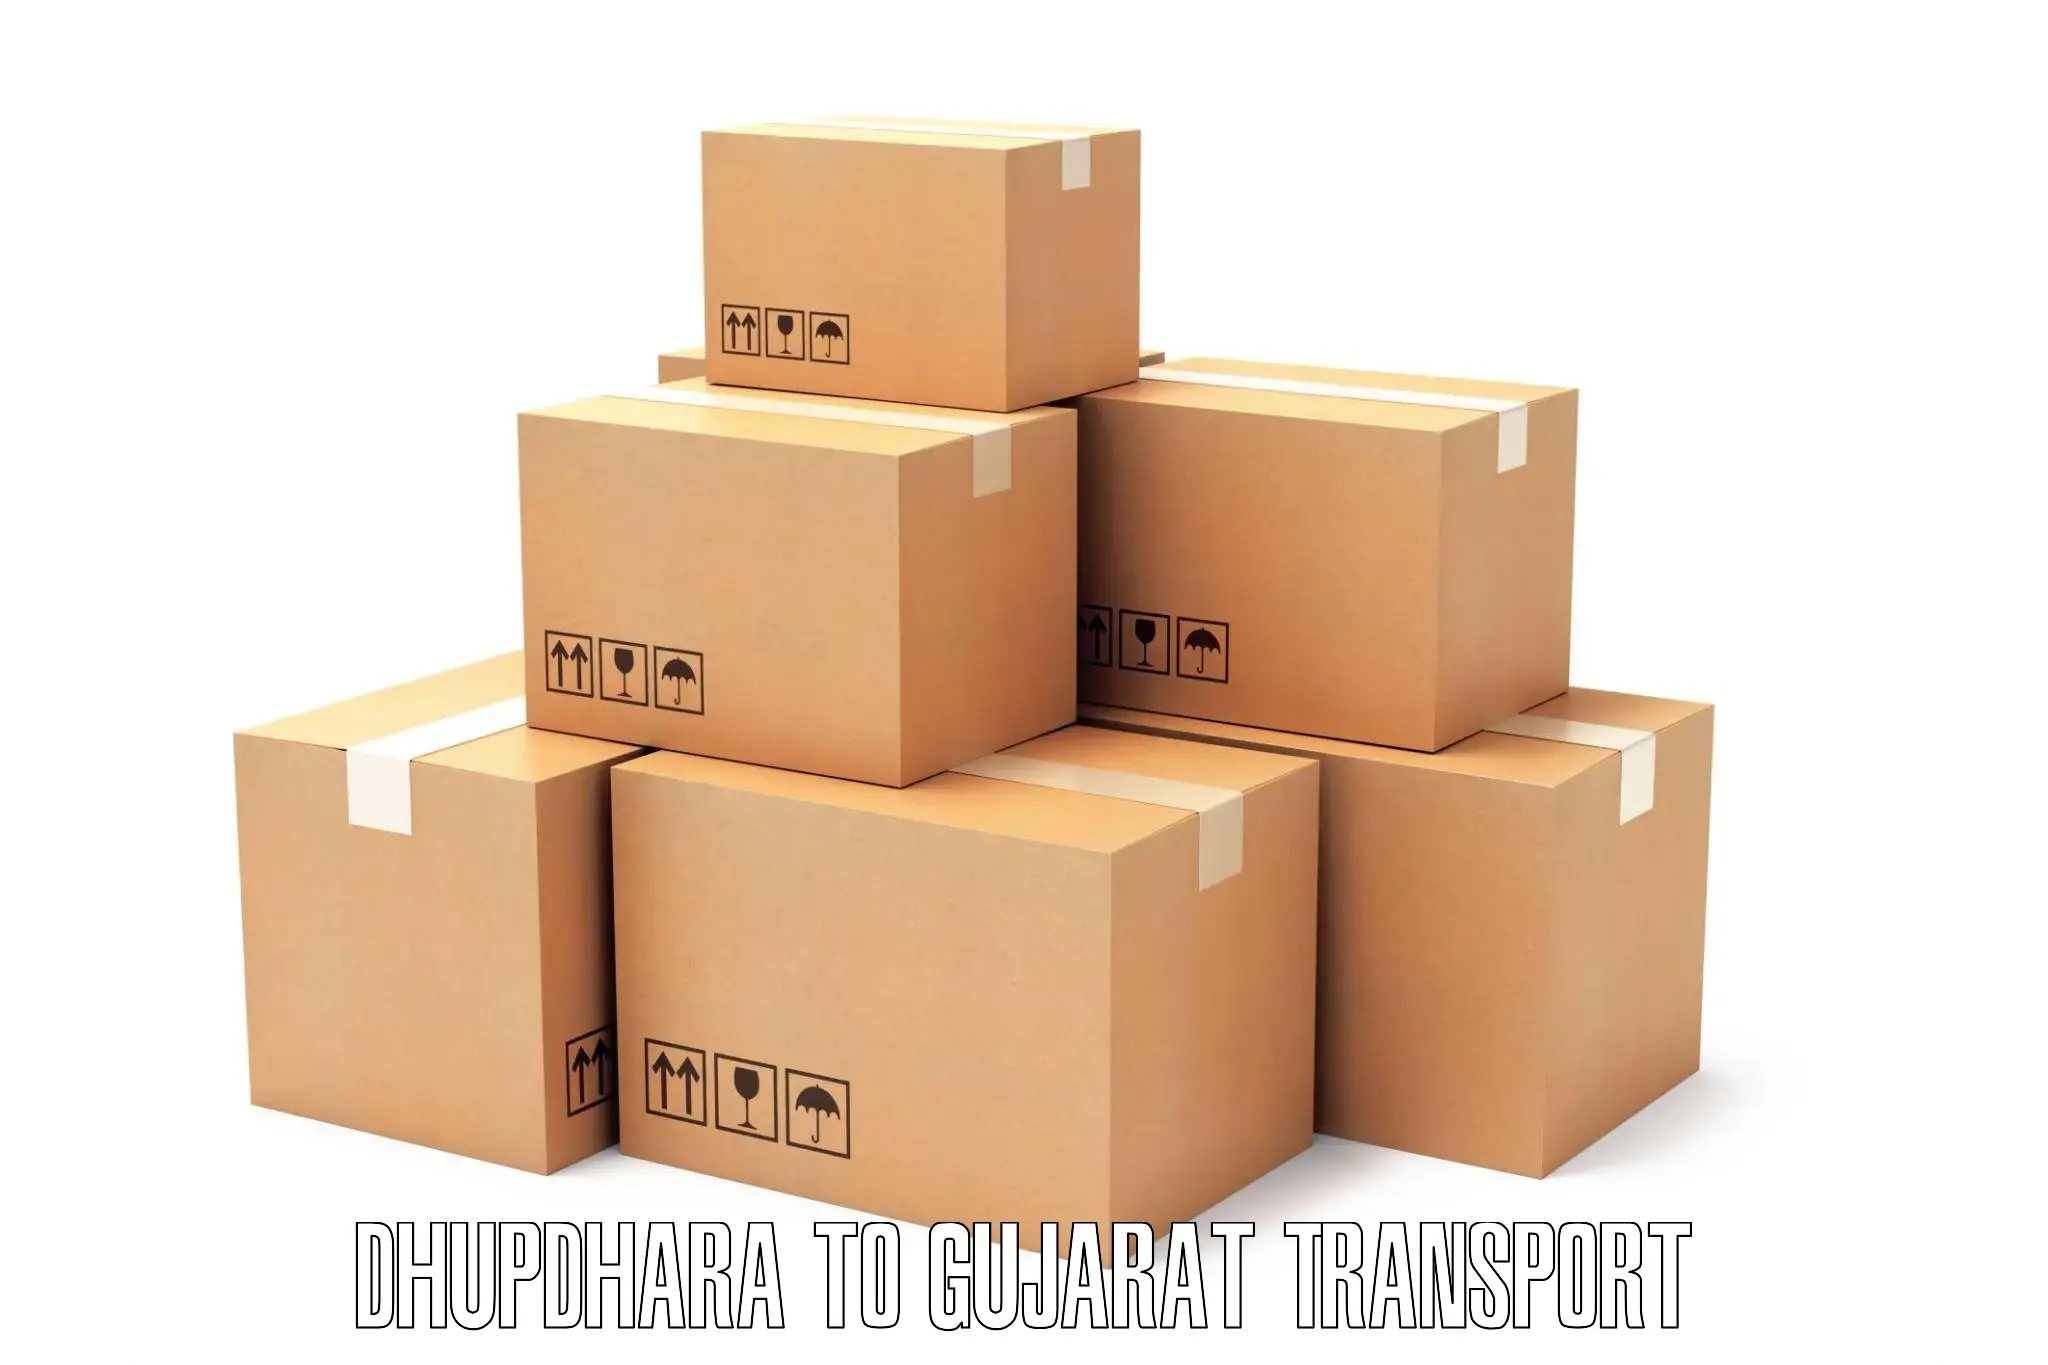 Furniture transport service Dhupdhara to Dharampur Valsad